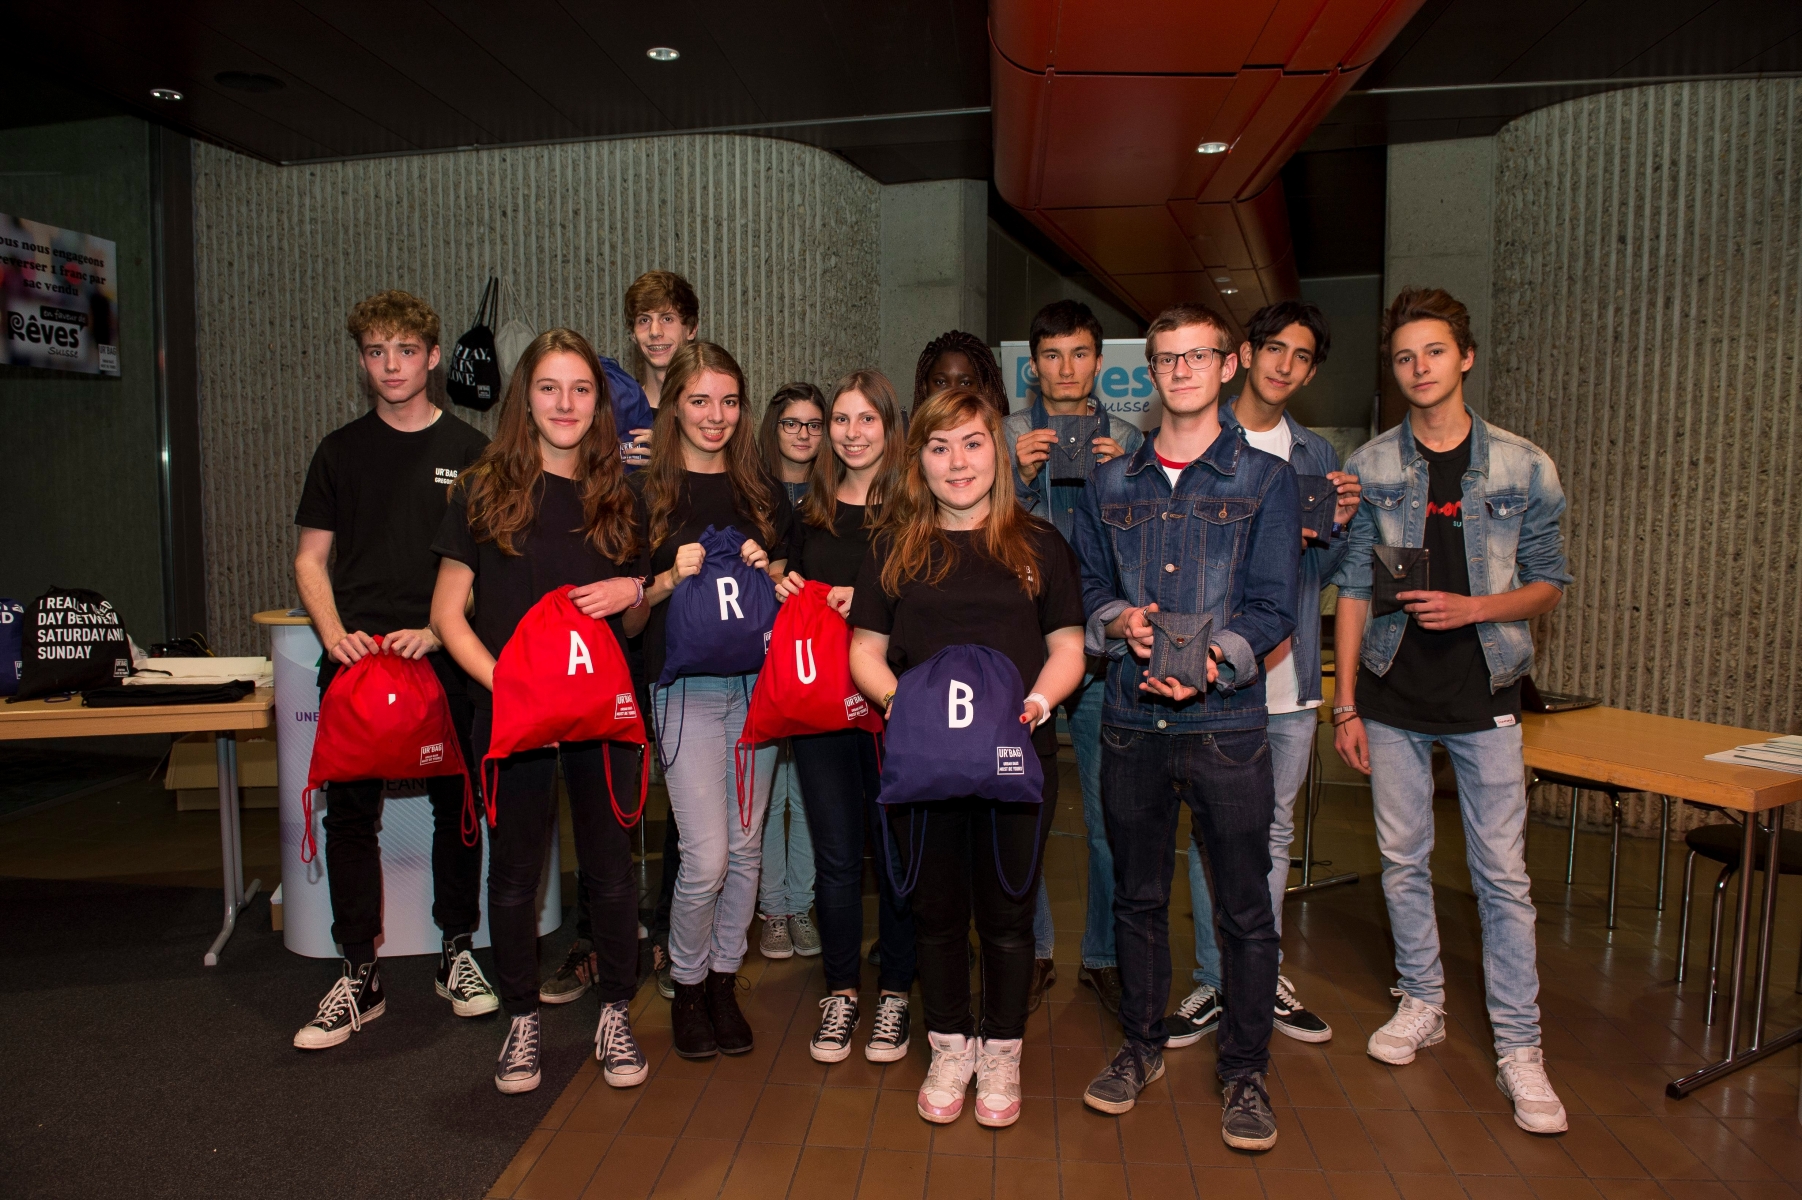 Des eleves du lycee jean-piaget dans le cadre du projet "YES" presentent leur produit. 



Neuchatel, le 27.10.2015



Photo : Lucas Vuitel